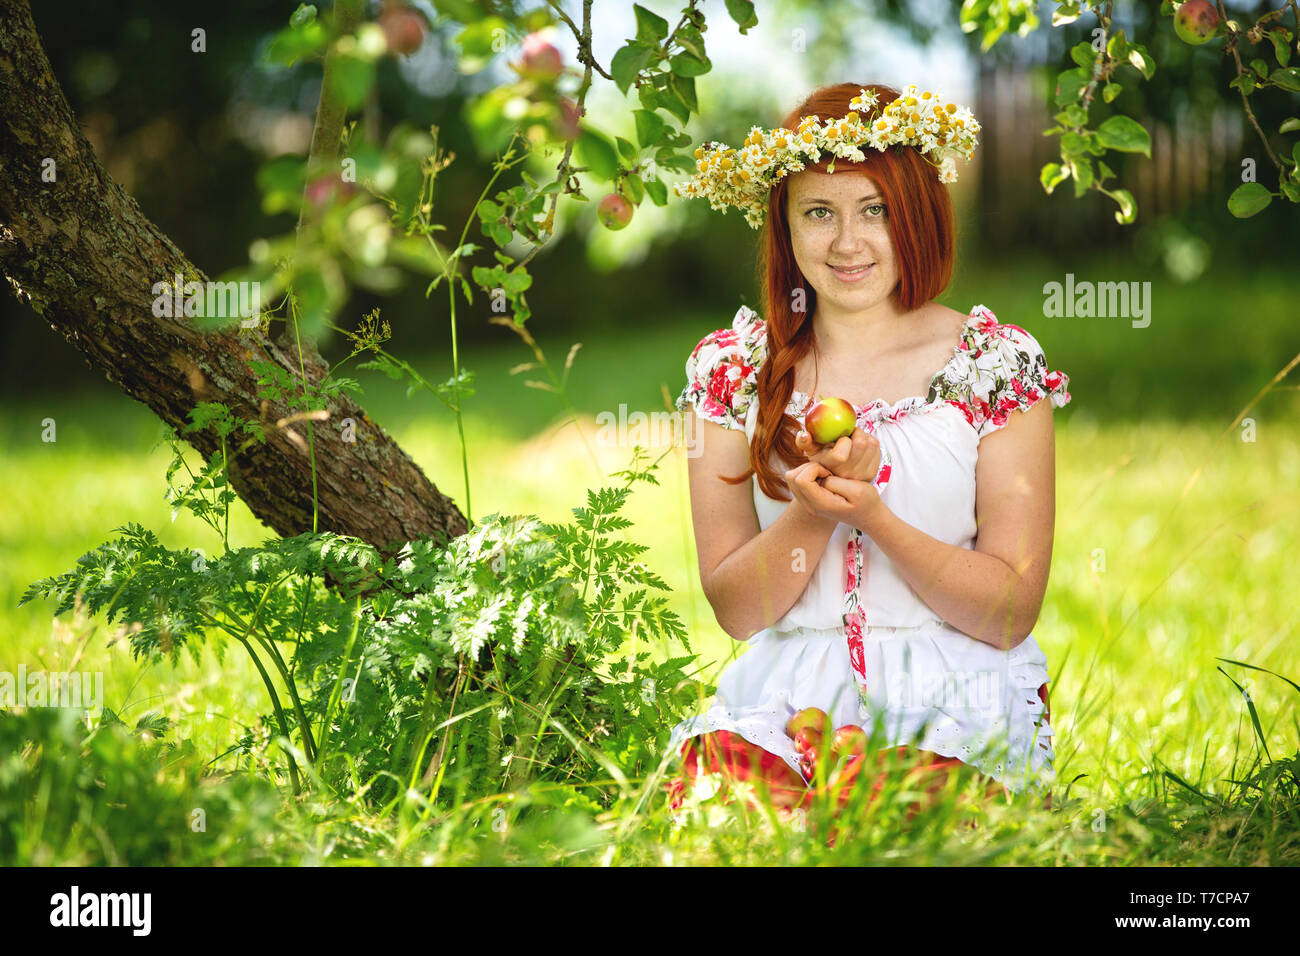 La fille rurale dans une tenue traditionnelle de l'apple tree Banque D'Images